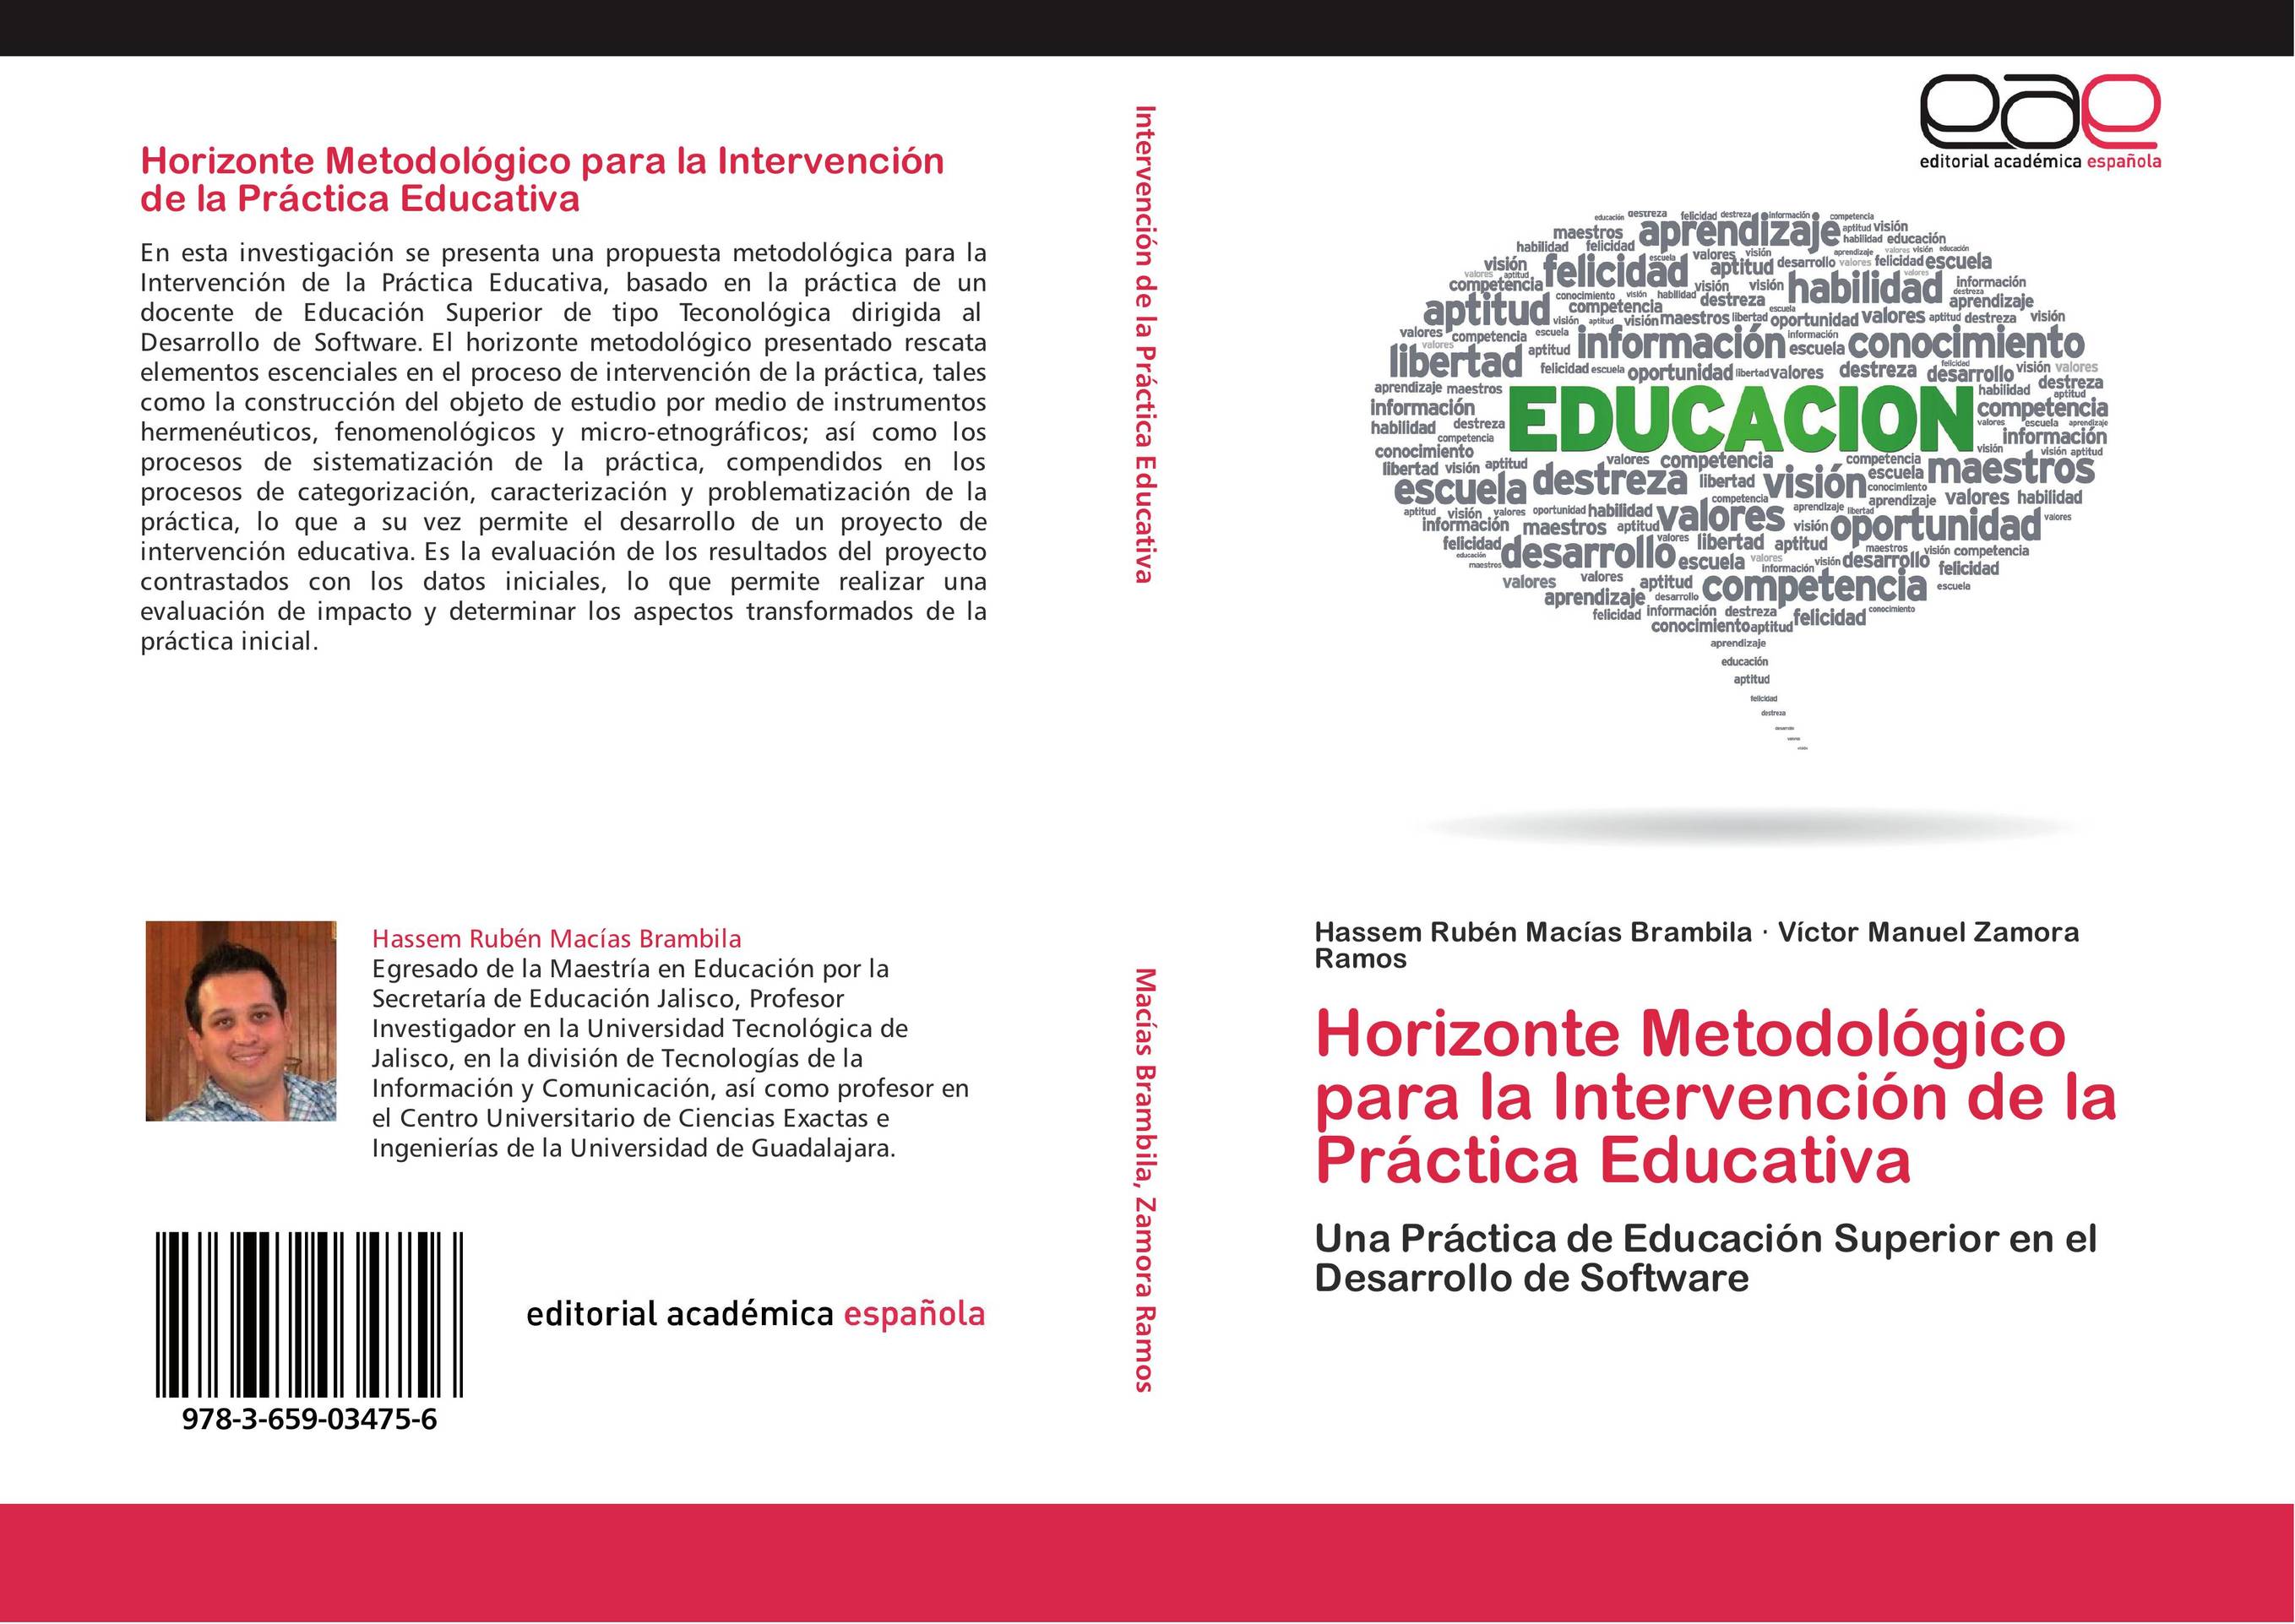 Horizonte Metodológico para la Intervención de la Práctica Educativa